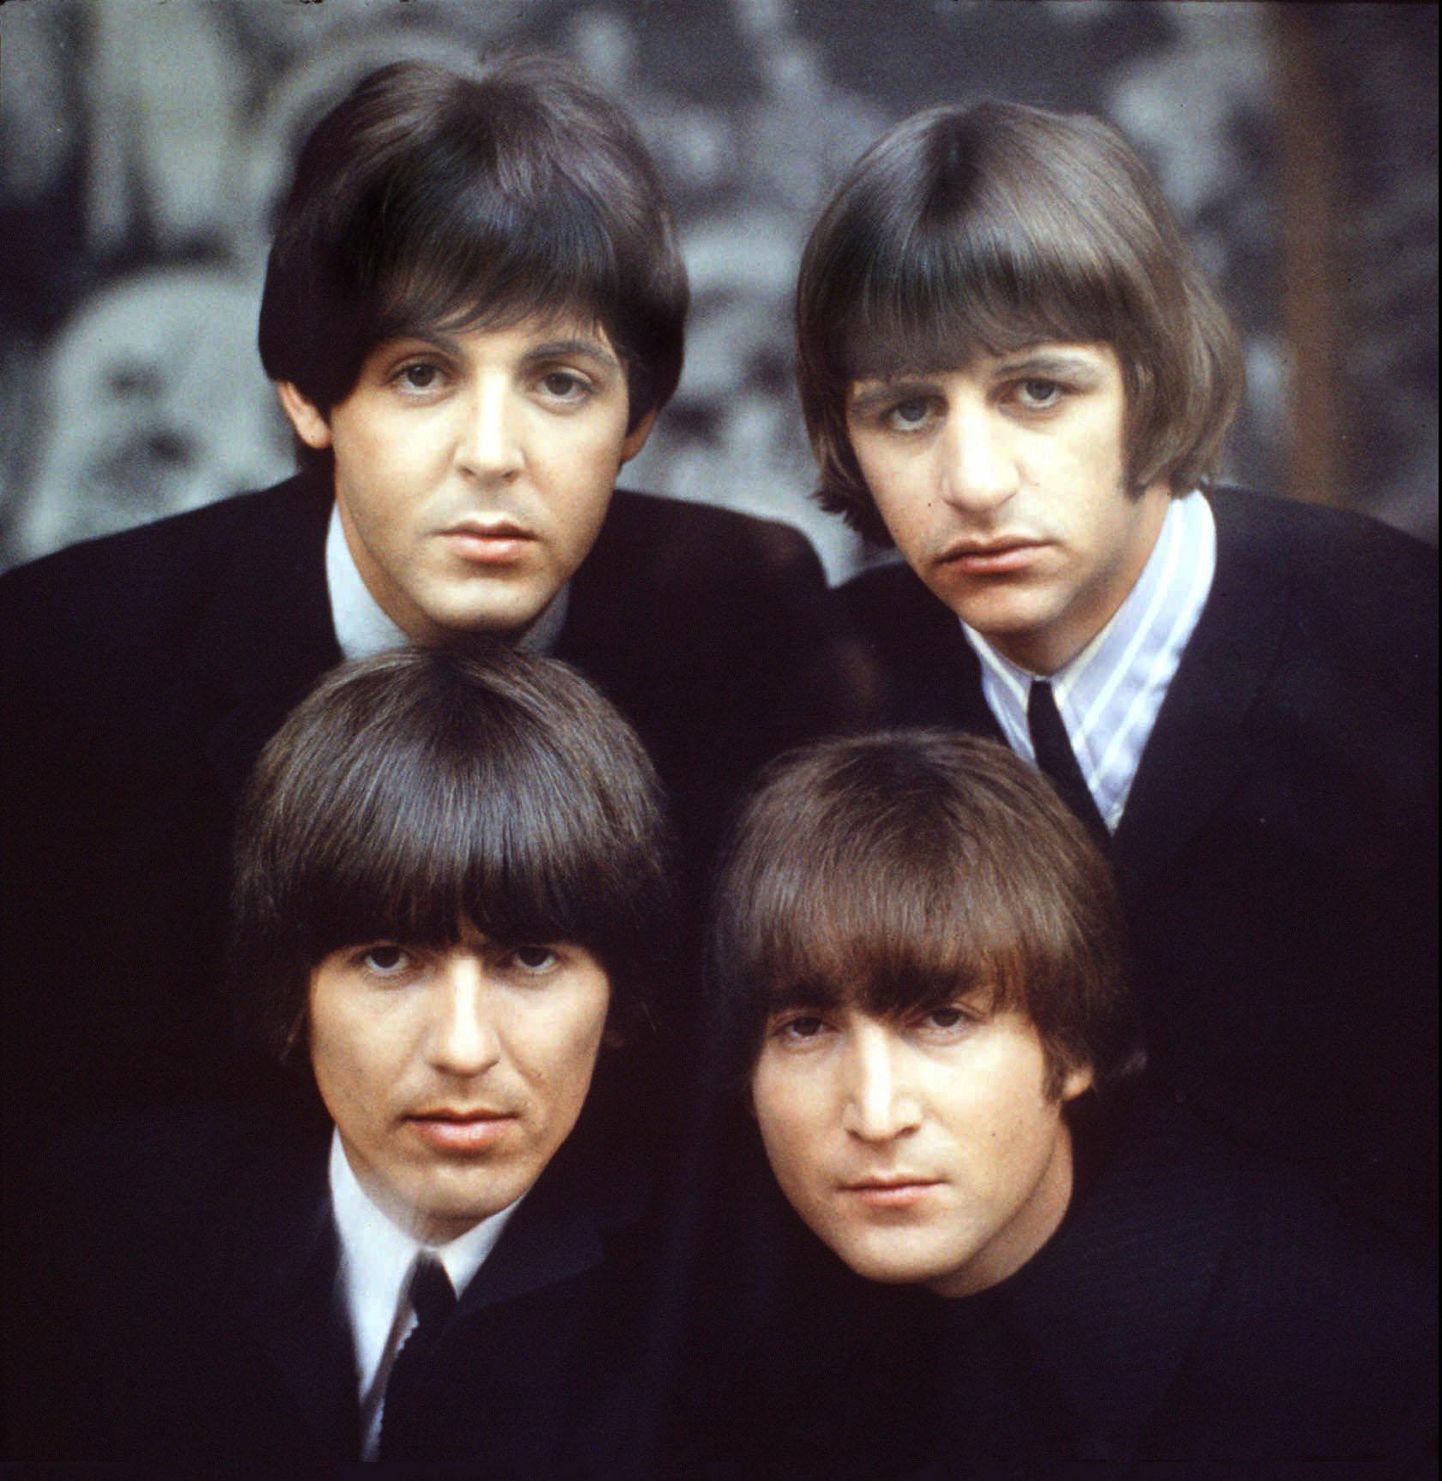 Ansambel The Beatles (kellaosuti suunas vasakult ülevalt alates) koosseisus Paul McCartney, Ringo Starr, John Lennon ja George Harrison.